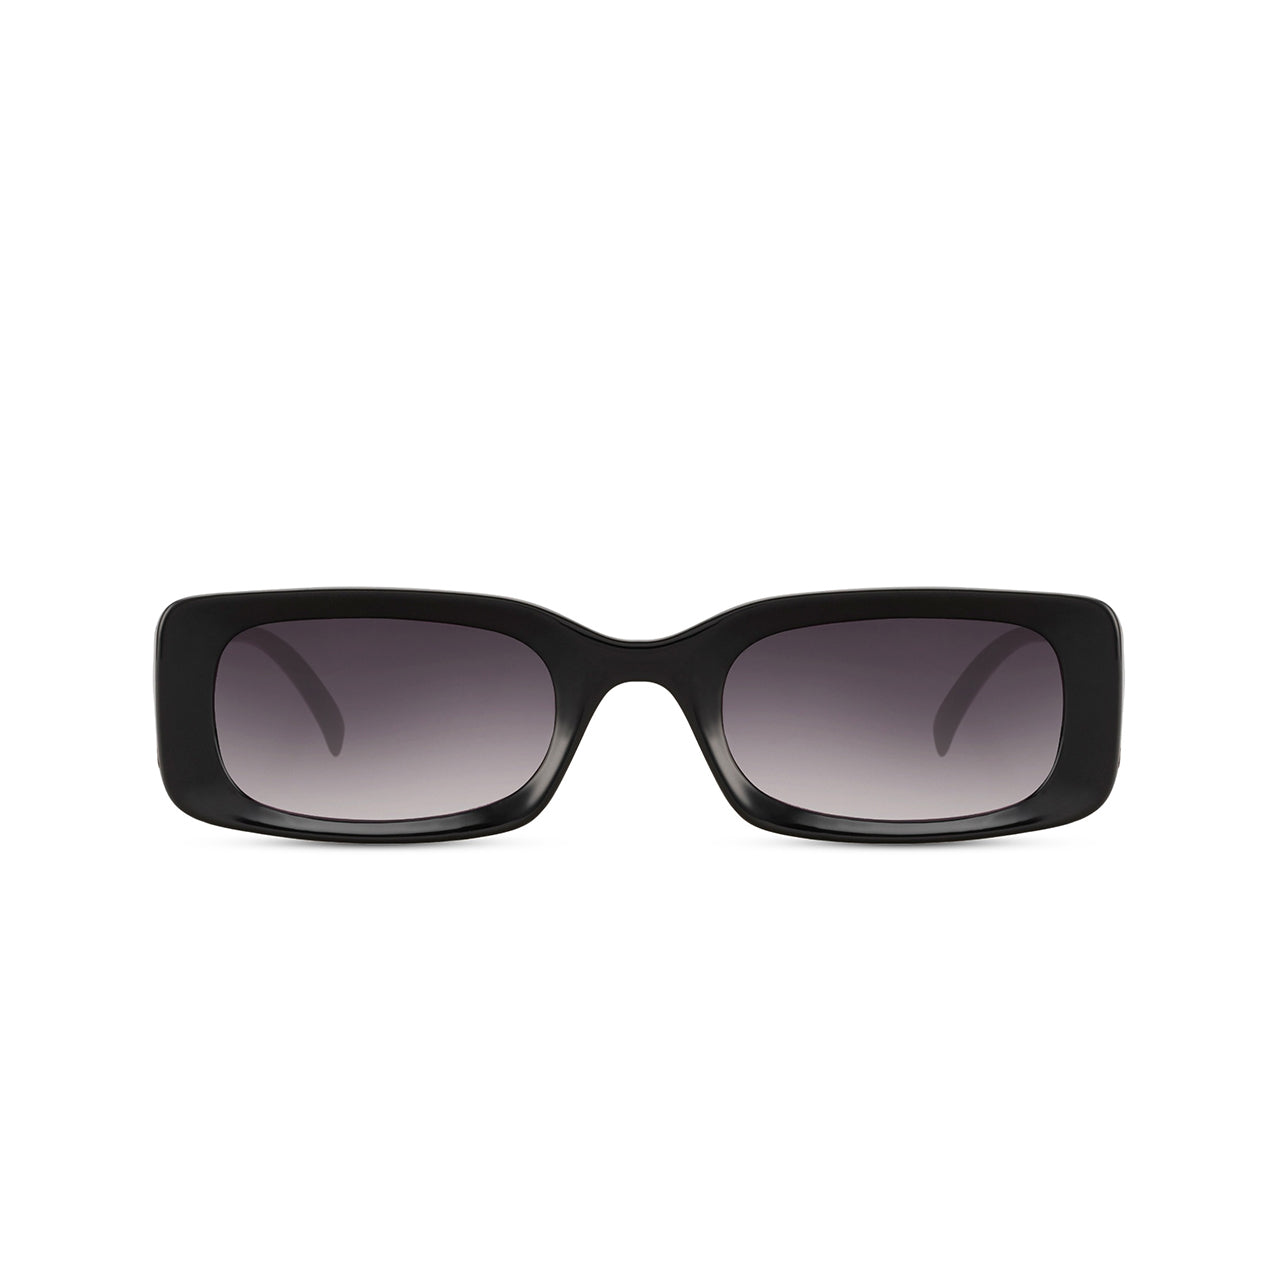 Snash - Sonnenbrille rechteckig, schmal